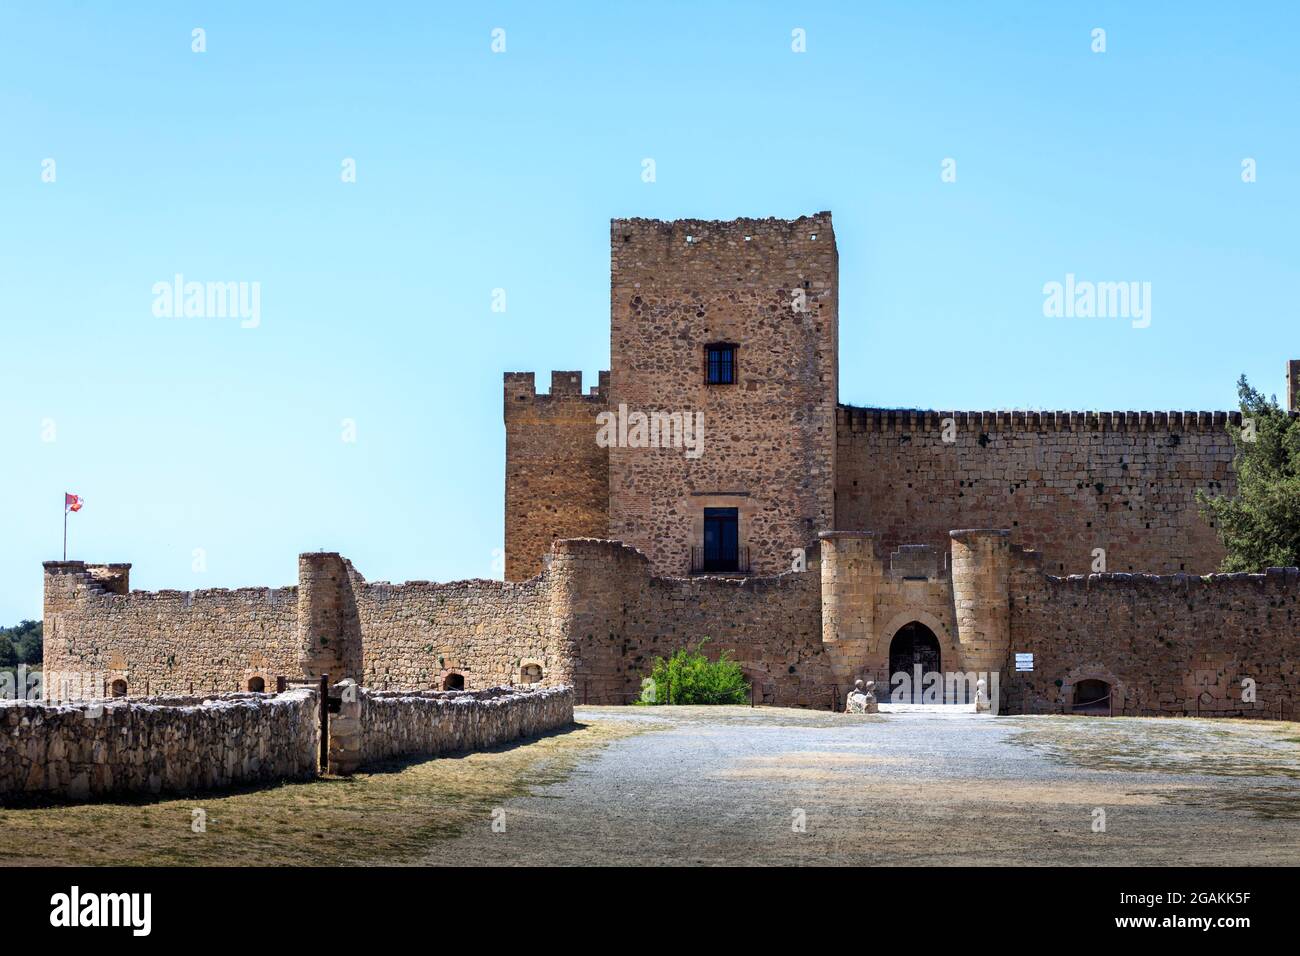 Die Burg der mittelalterlichen Stadt Pedraza in der Provinz Segovia. Spanien. Stockfoto